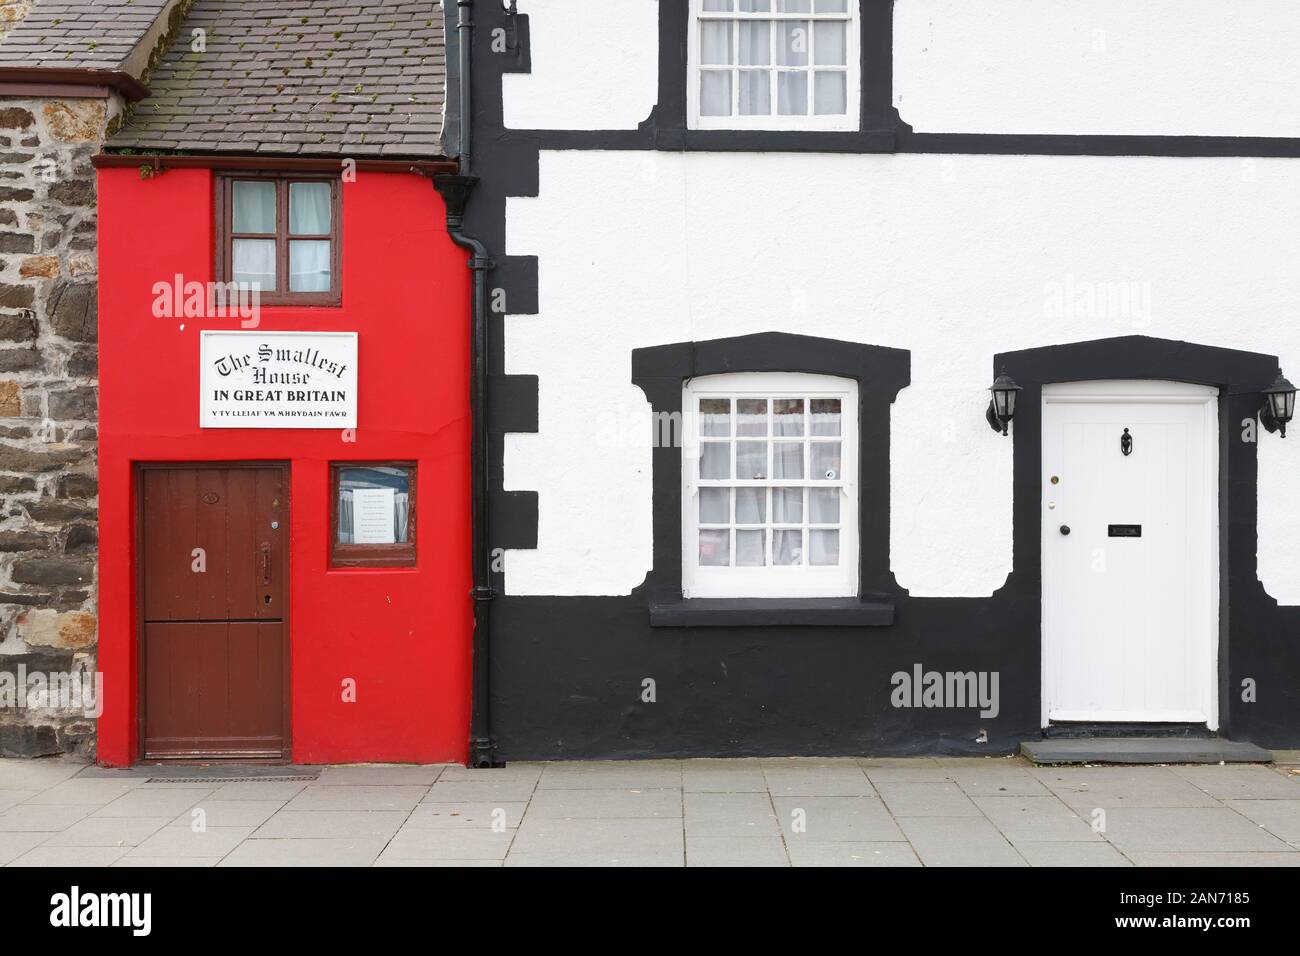 CONWY, UK - 26 février 2012. Quay House, la plus petite maison en Grande-Bretagne. Un petit bâtiment historique et attraction touristique à Conwy, Pays de Galles Banque D'Images